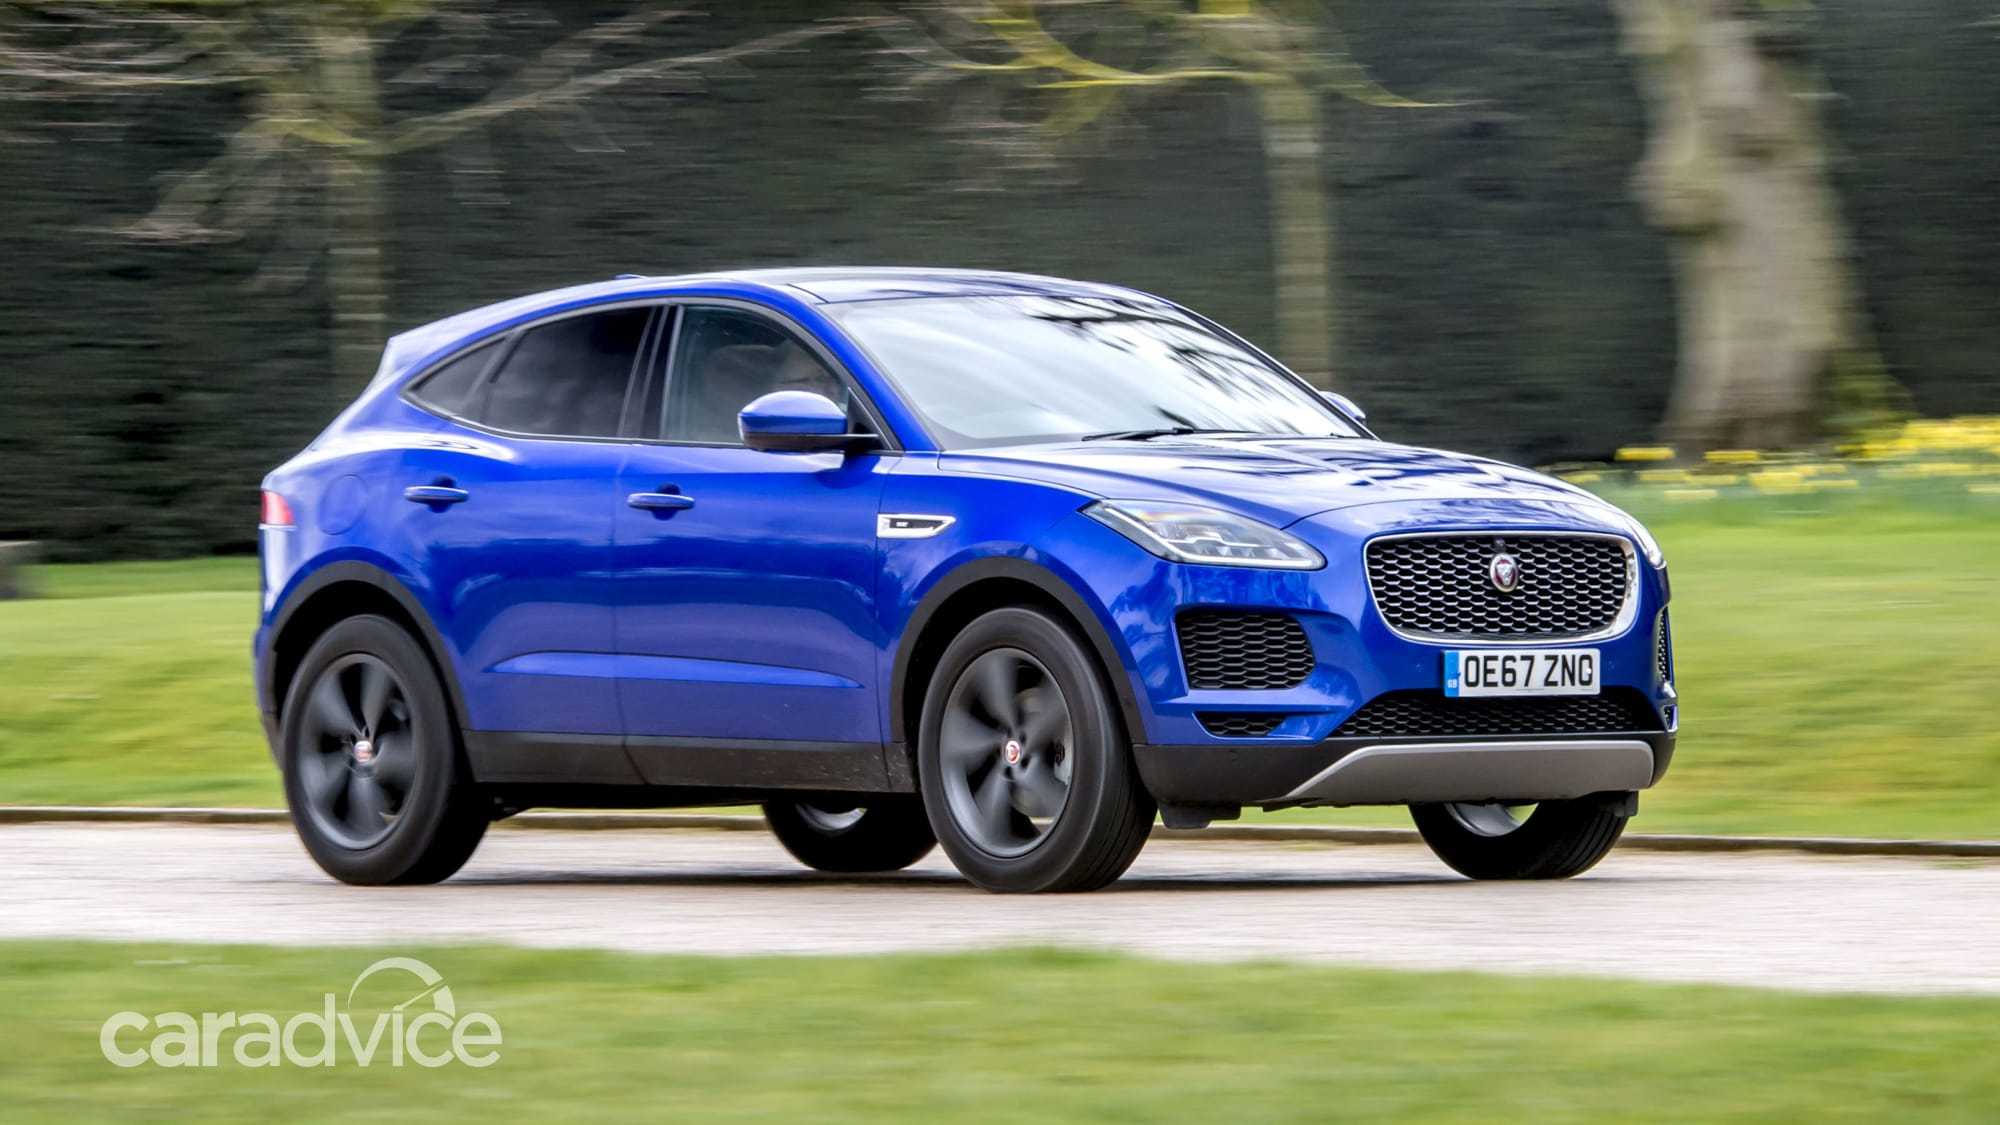 Jaguar i-pace 2021: фото, цена, комплектации, старт продаж в россии